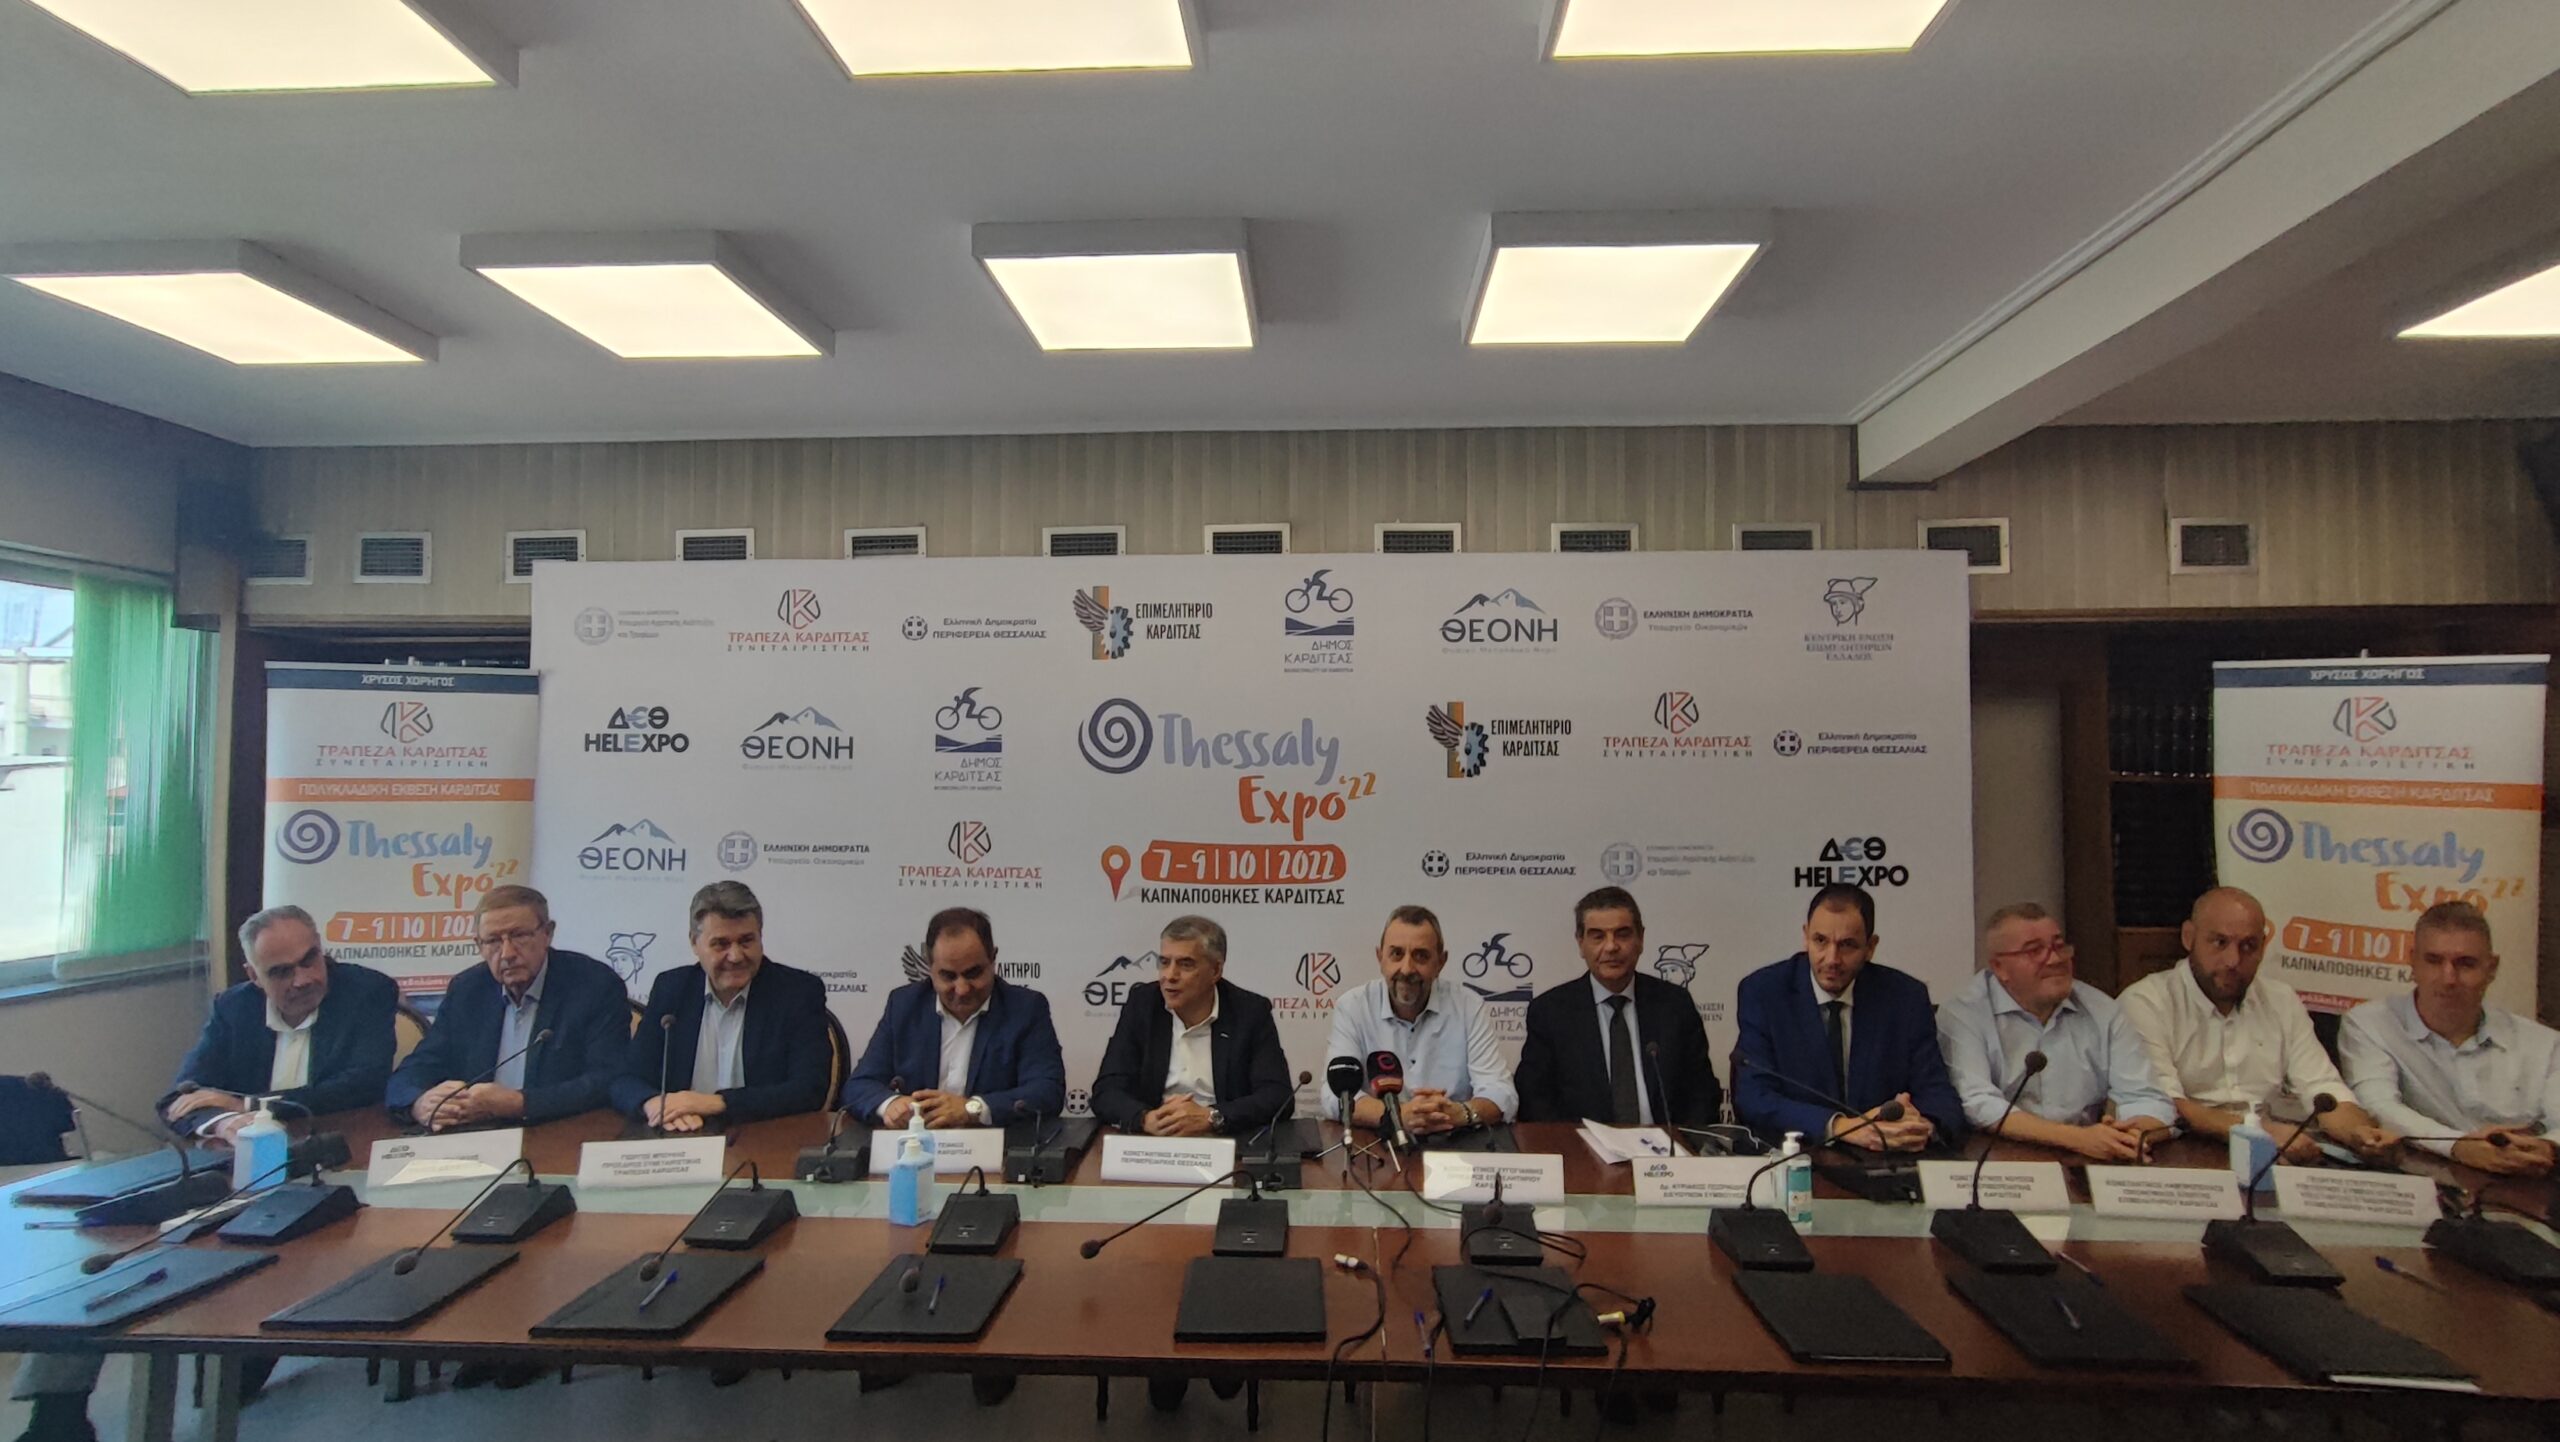 100 επιχειρήσεις στη Thessaly Expo,  που πραγματοποιείται από τις 7 έως τις 9 Οκτωβρίου  στην Καρδίτσα